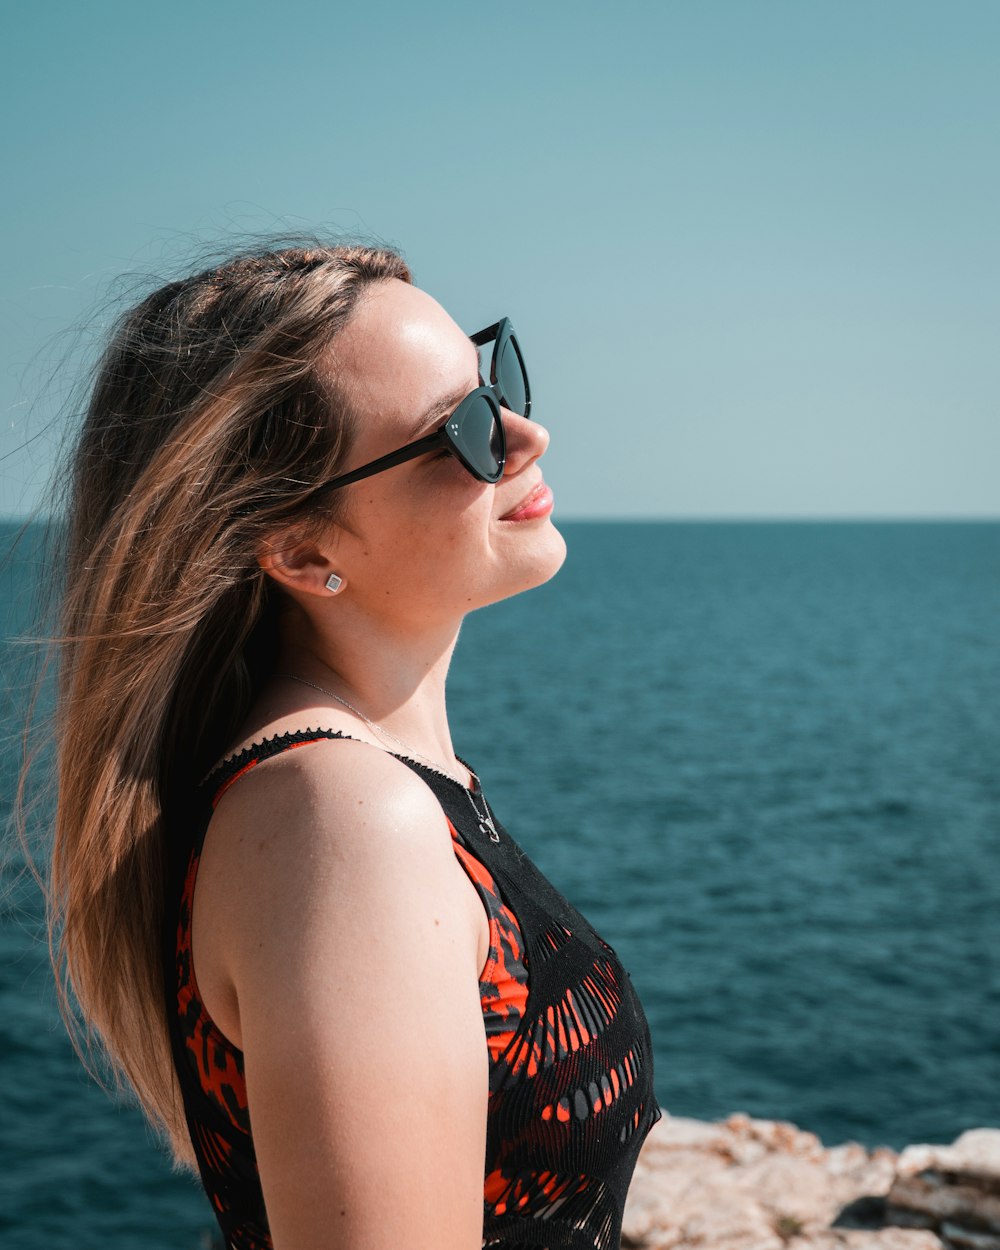 Une femme portant des lunettes de soleil regardant au-dessus de l'eau photo  – Photo Adulte Gratuite sur Unsplash